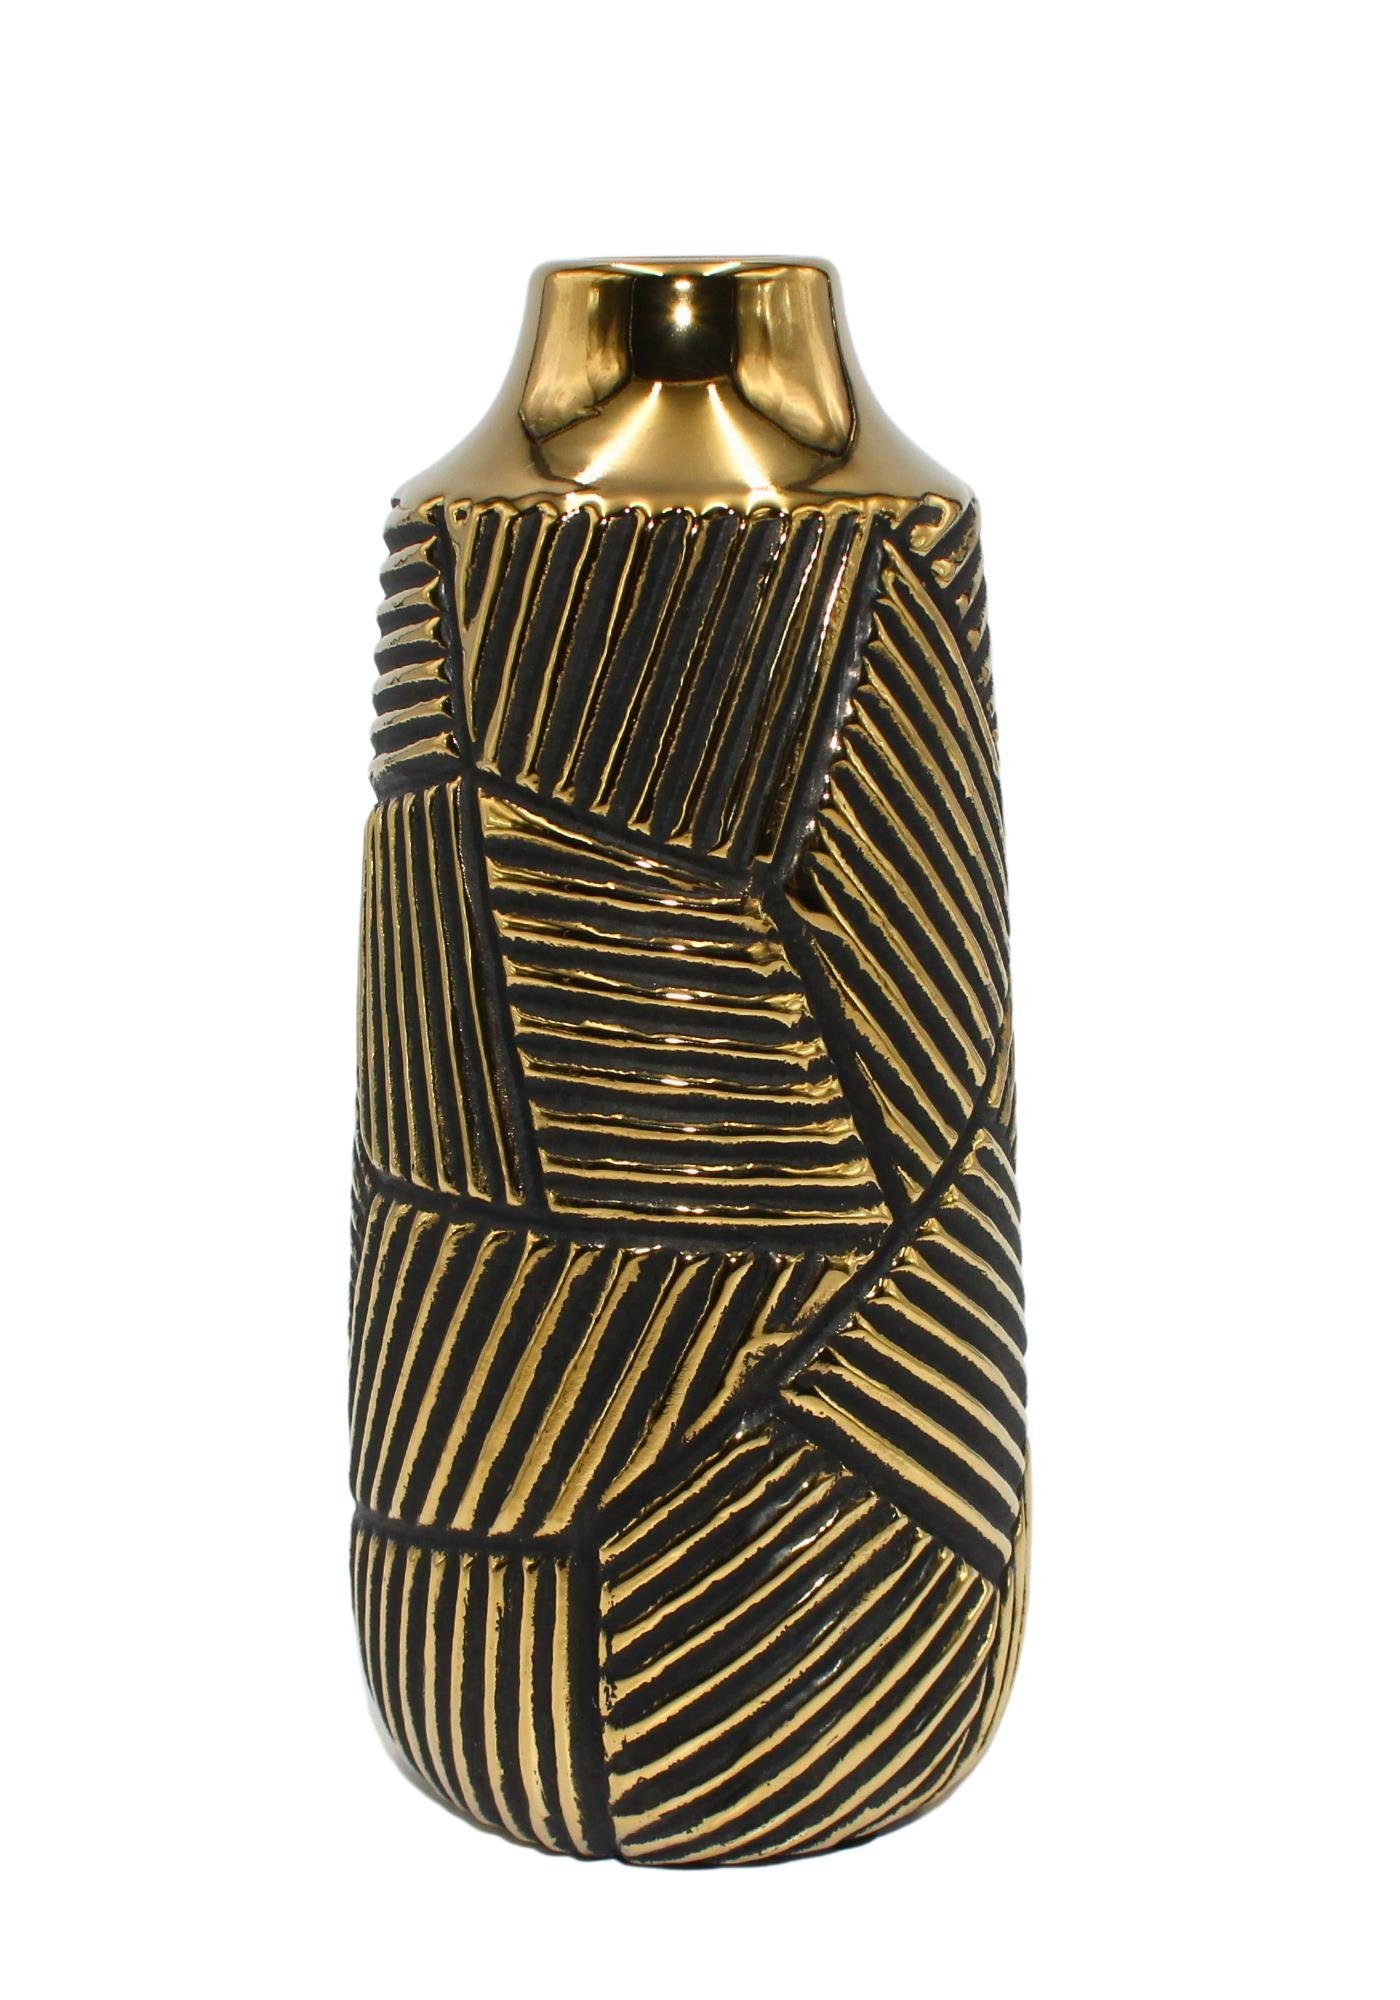 Dekohelden24 Dekovase Edle hochwertige schmale Keramik Vase in gold-schwarz, verschiedene (1 Vase, 1 St)